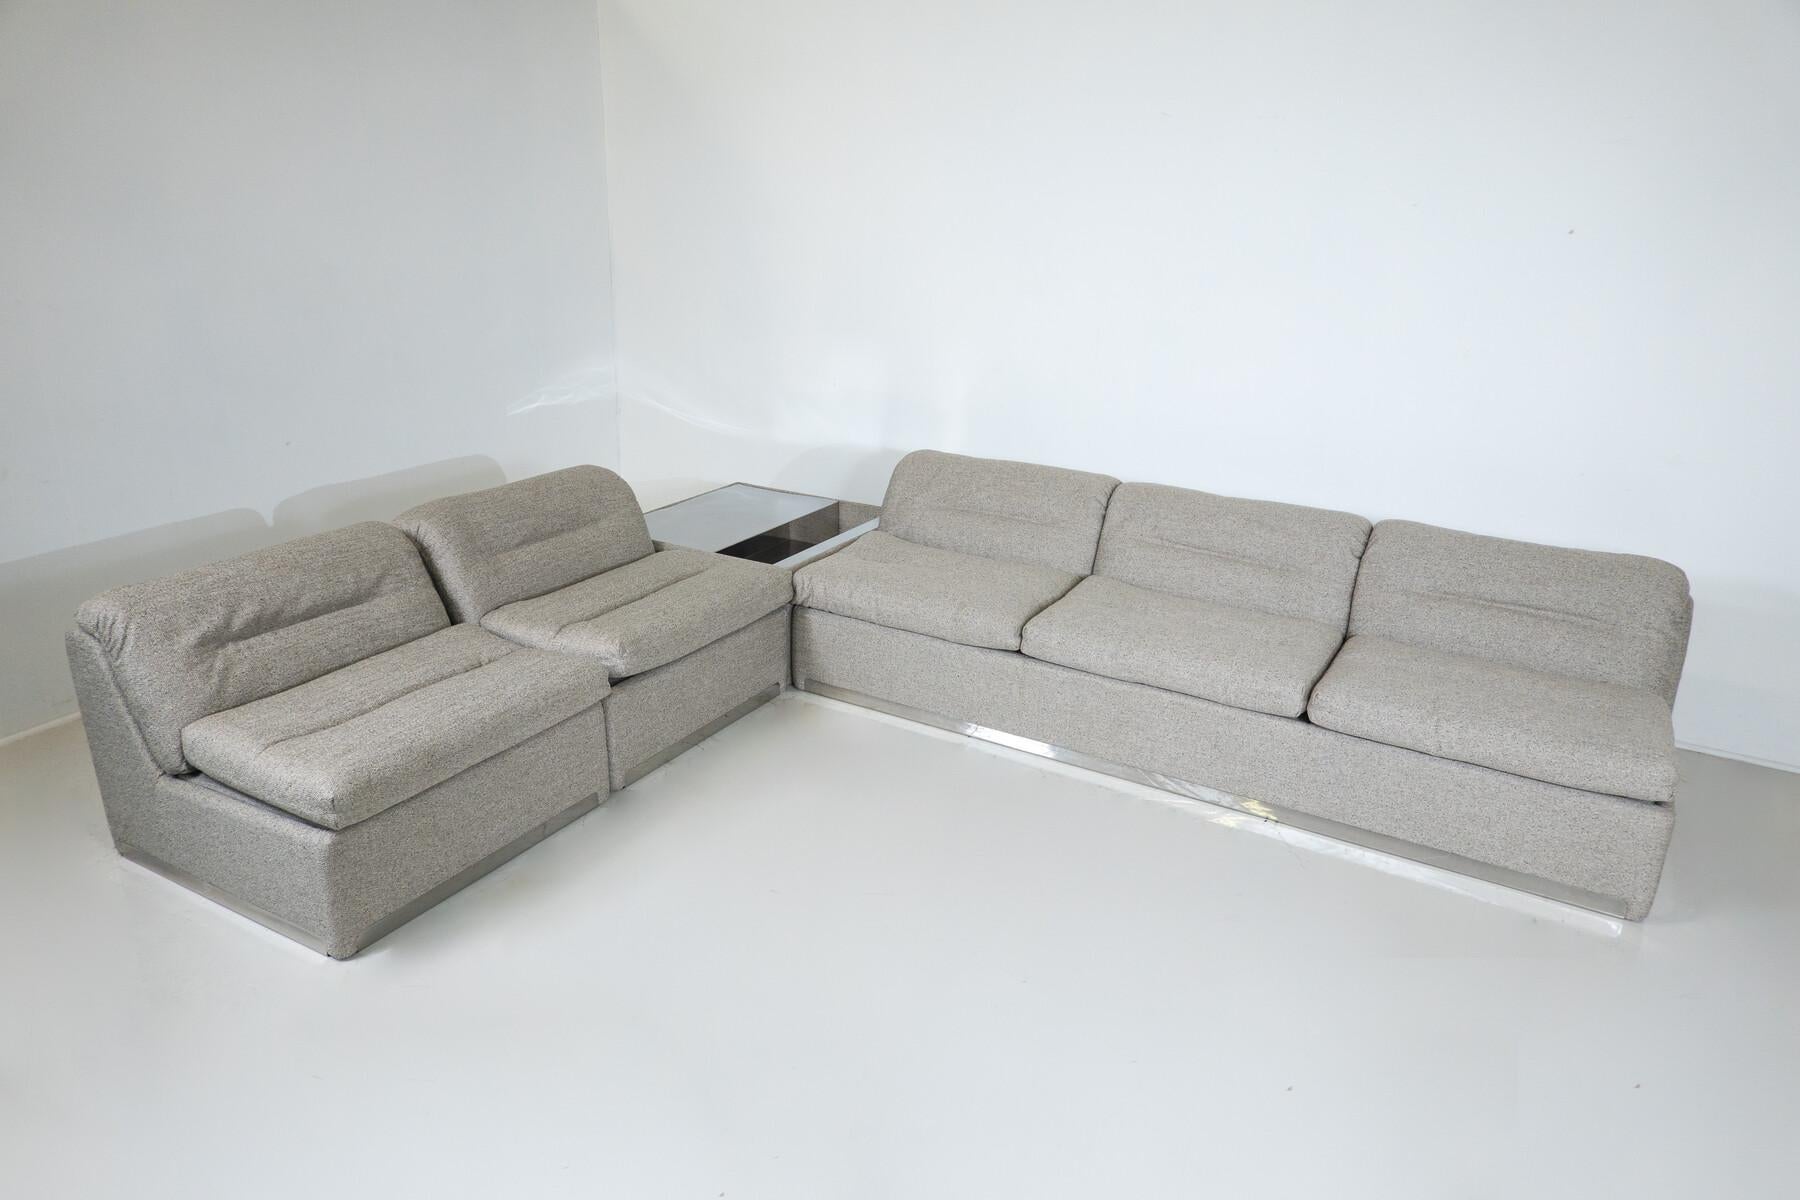 P10 Proposals Modulares Sofa von Giovanni Offredi für Saporiti, Italien, 1970er Jahre - Neu gepolstert